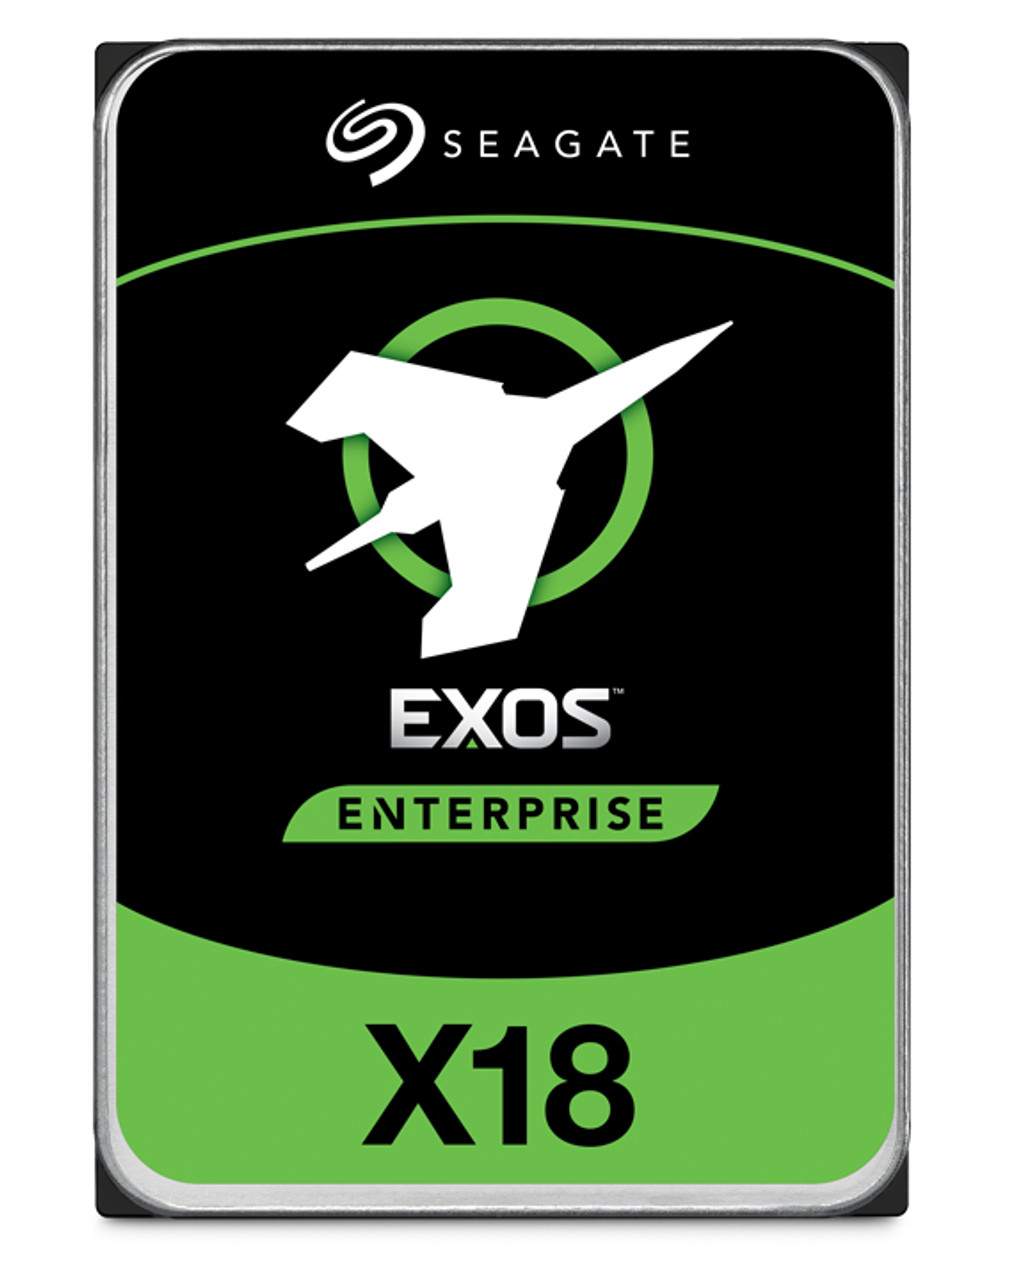 Seagate Enterprise ST18000NM004J internal hard drive 3.5" 18 TB SAS